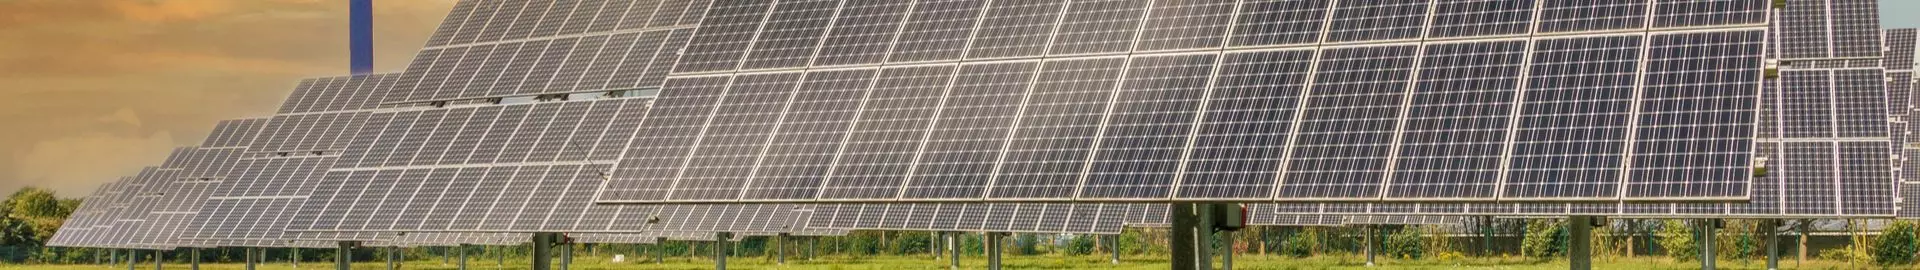 Tandem Solar Cell Market